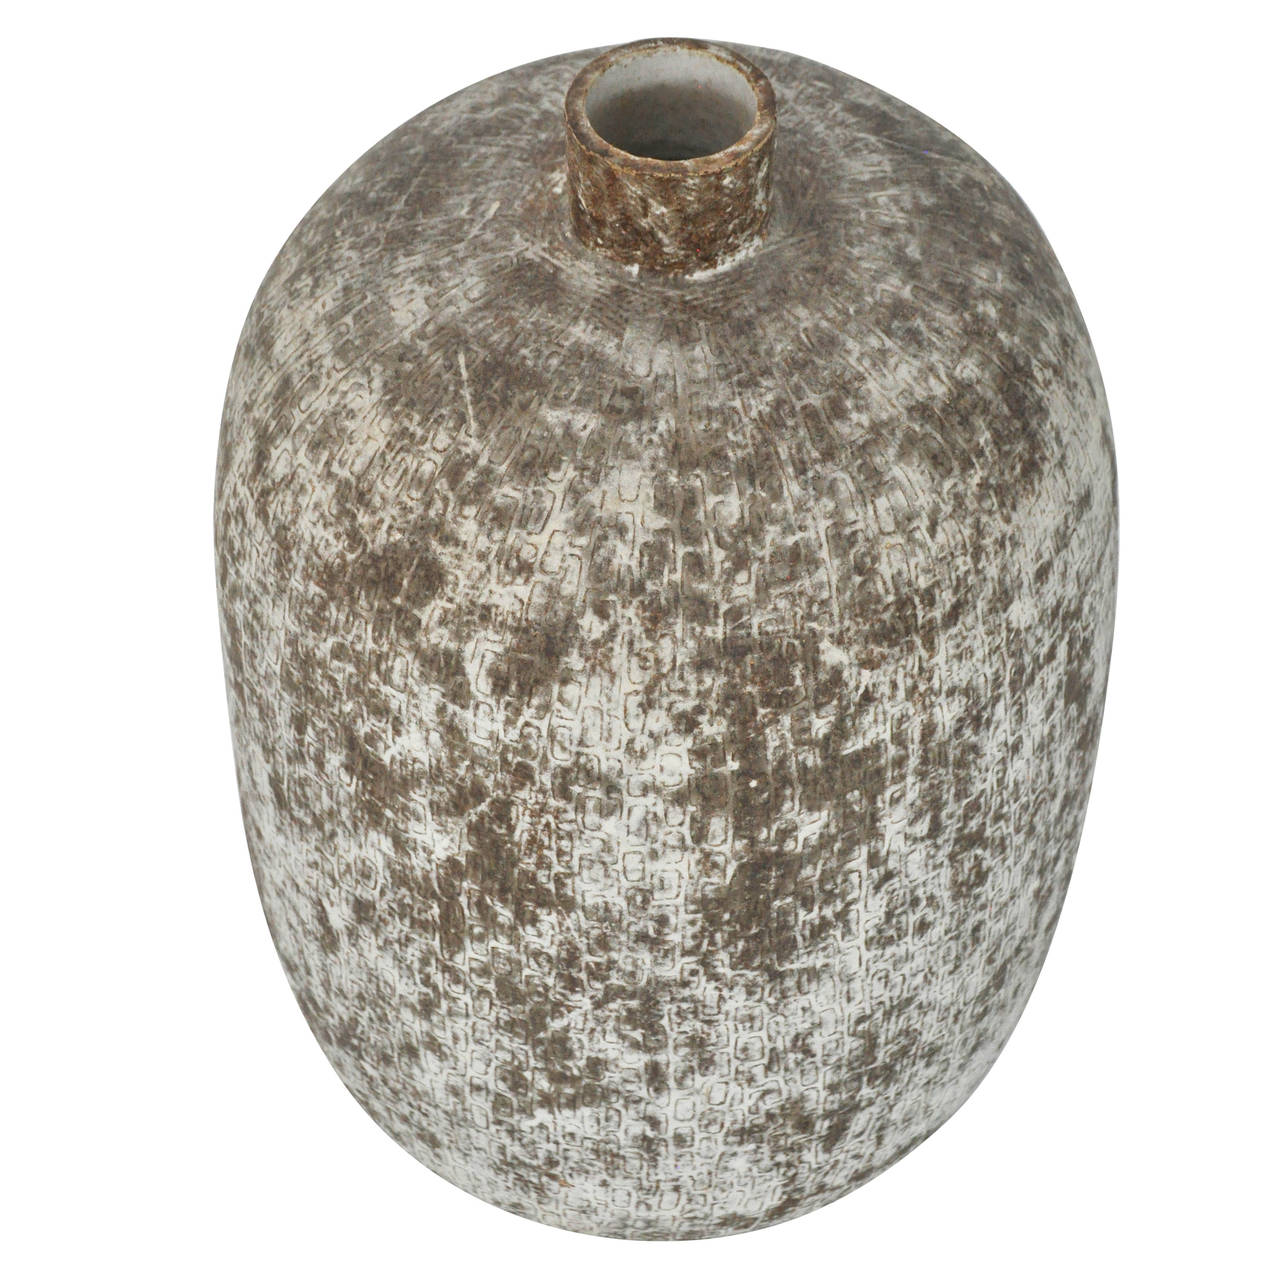 Ceramic vessel tittles 